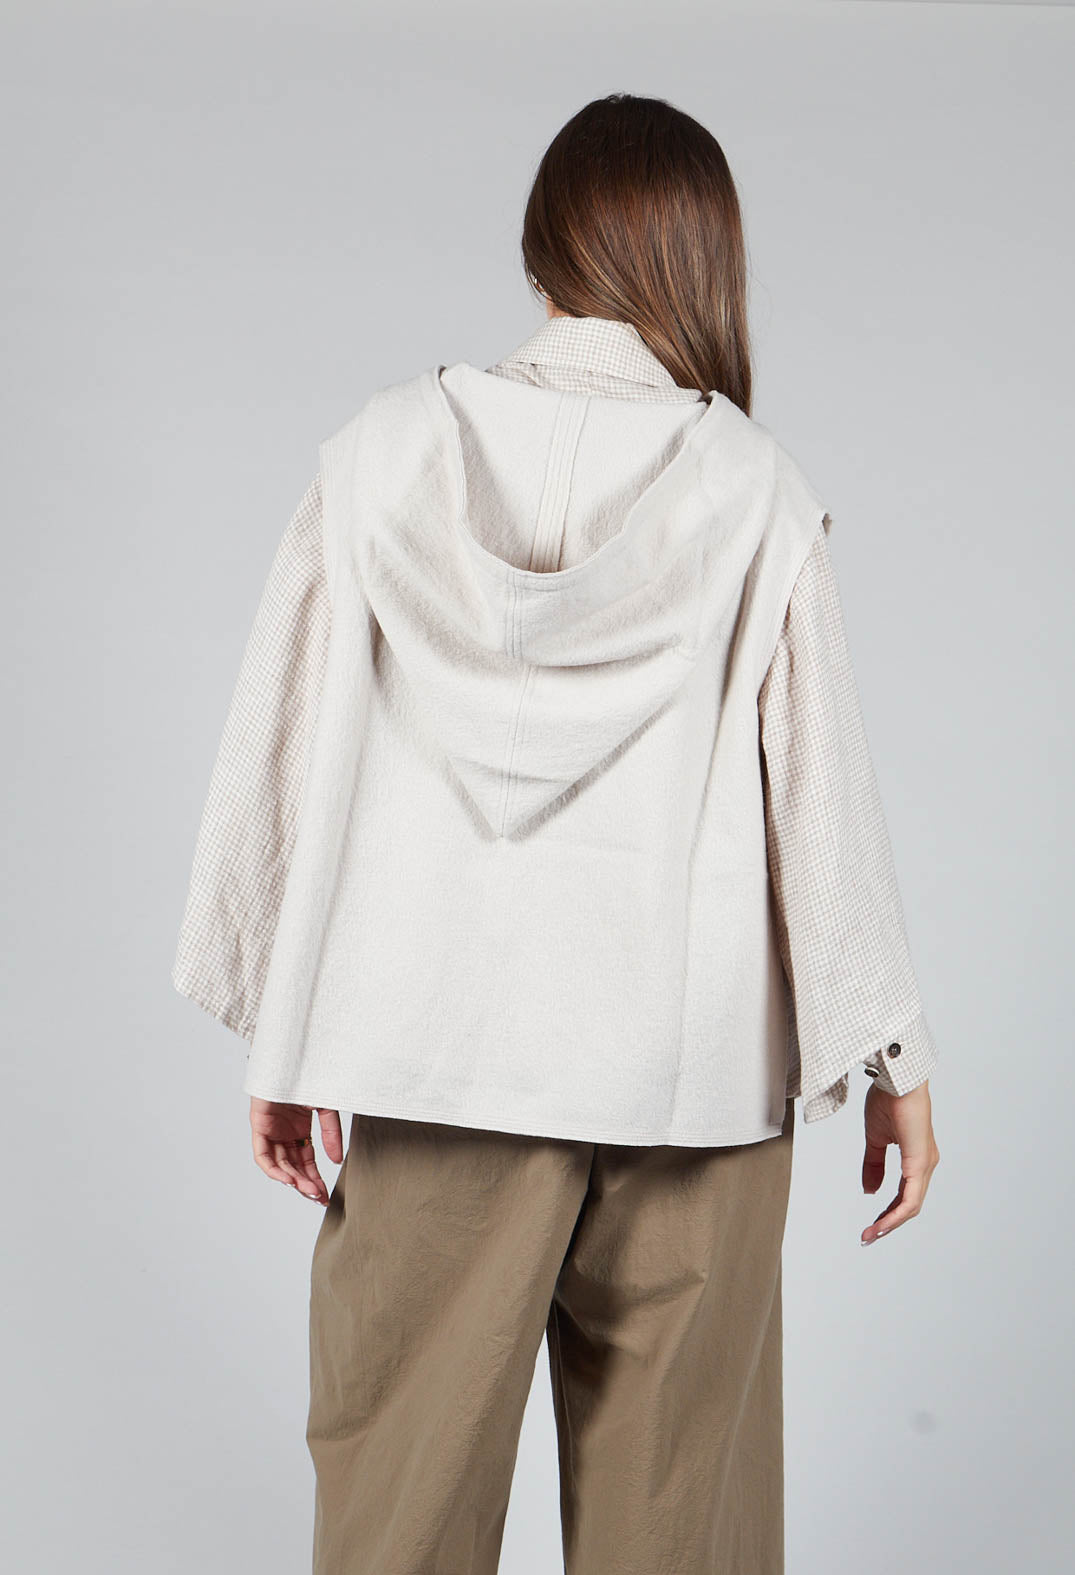 Sleeveless Basics Vest in Off White